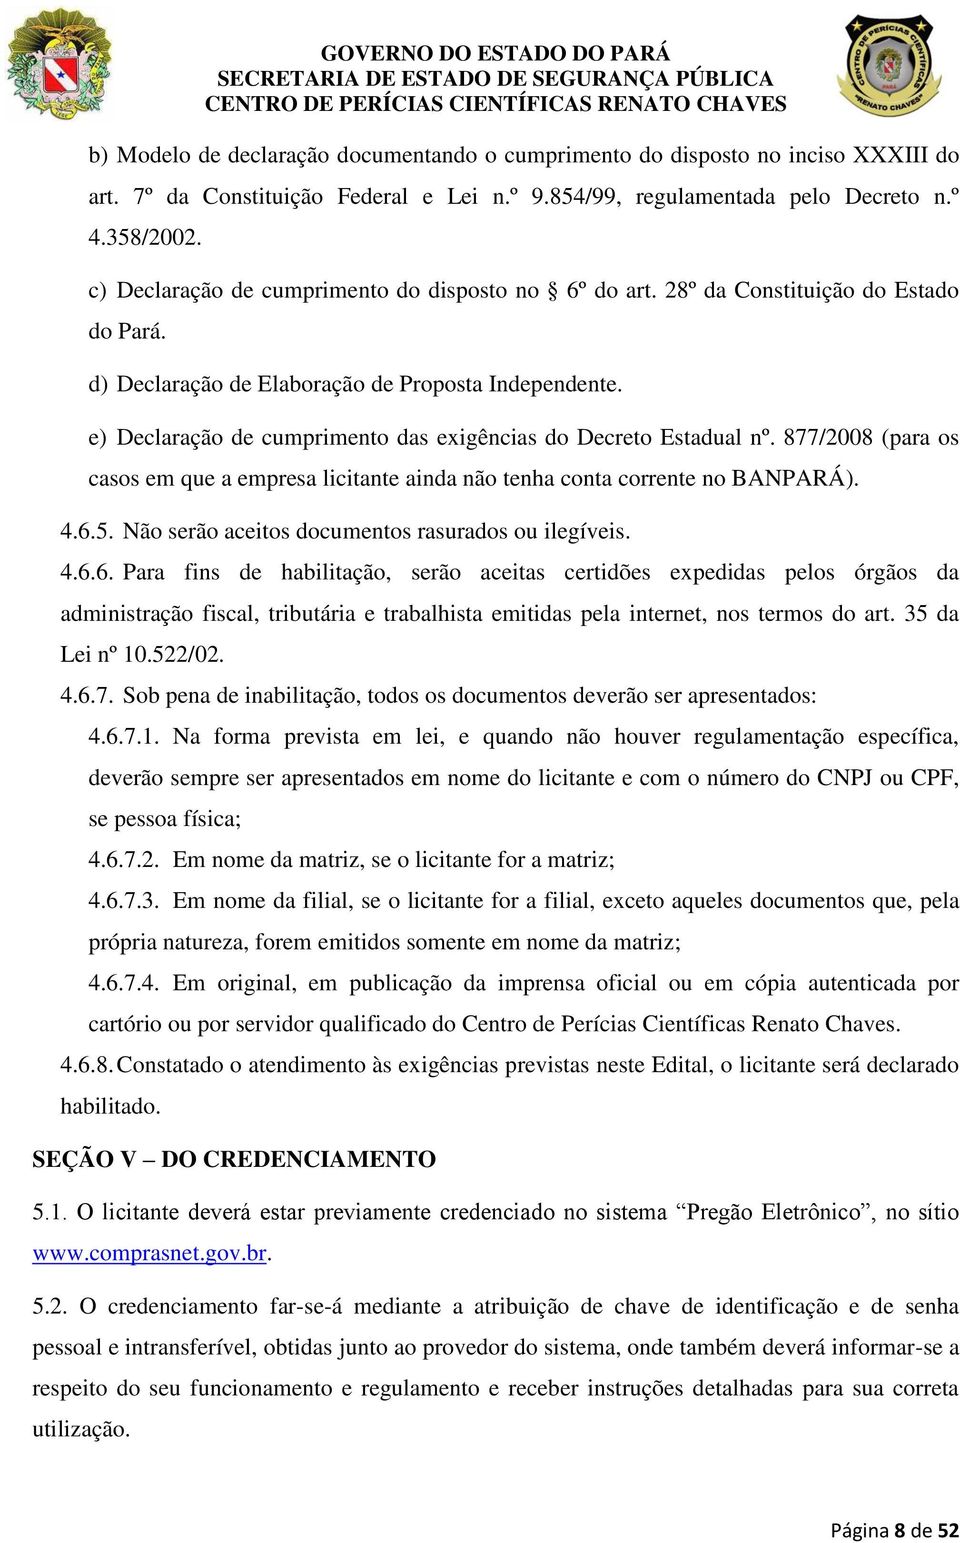 e) Declaração de cumprimento das exigências do Decreto Estadual nº. 877/2008 (para os casos em que a empresa licitante ainda não tenha conta corrente no BANPARÁ). 4.6.5.